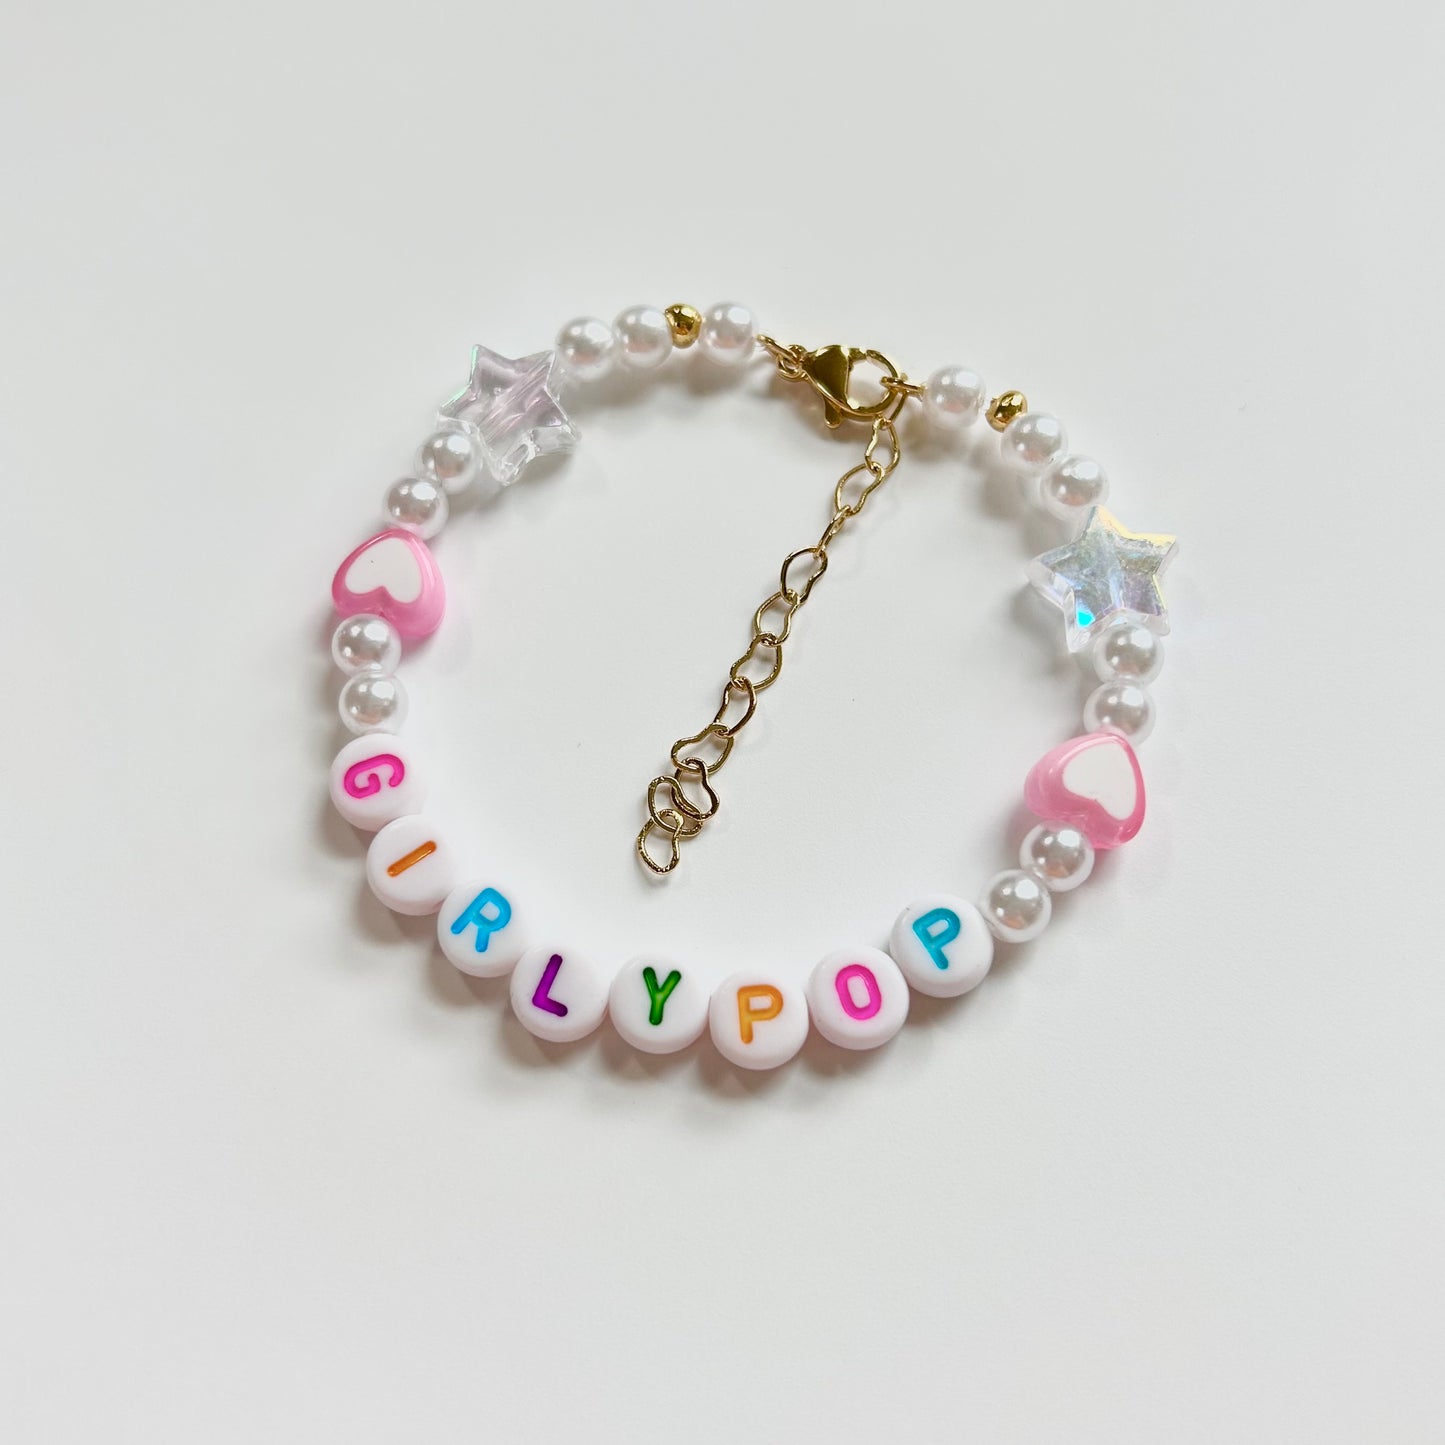 Girlypop Friendship Bracelet